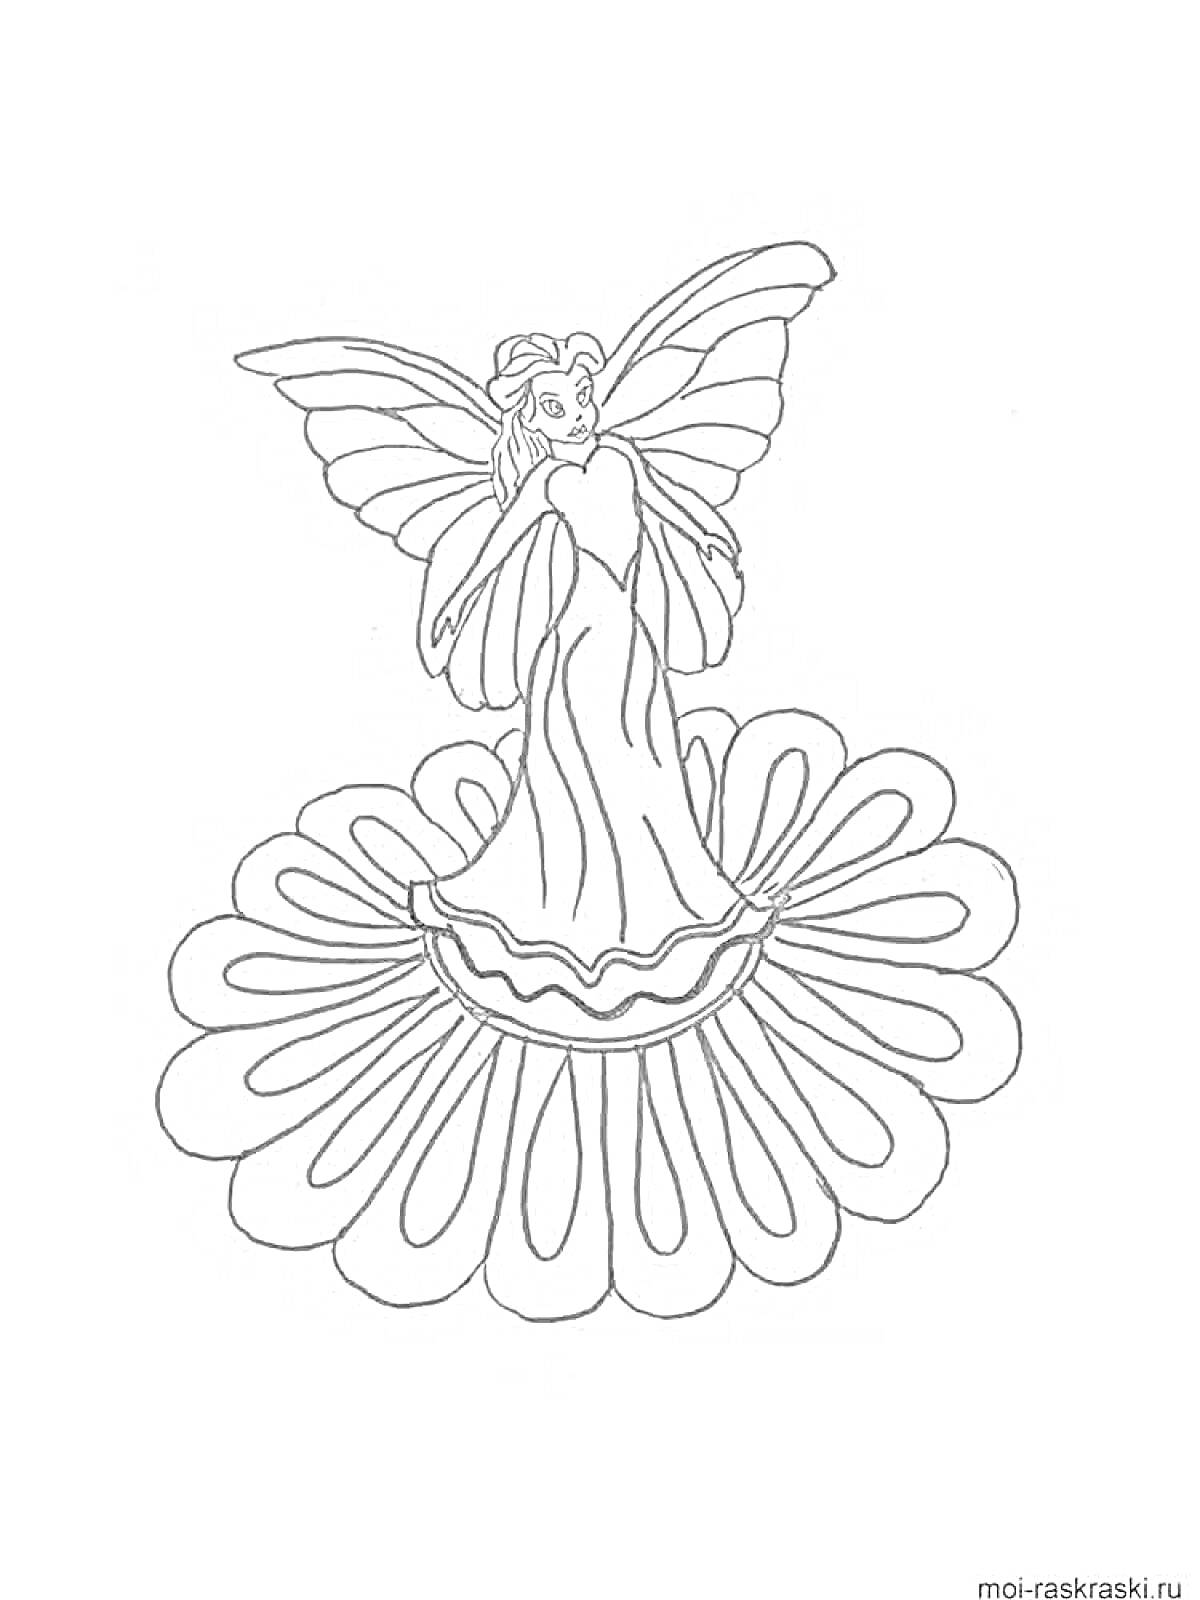 Раскраска Фея с крыльями на большом цветке